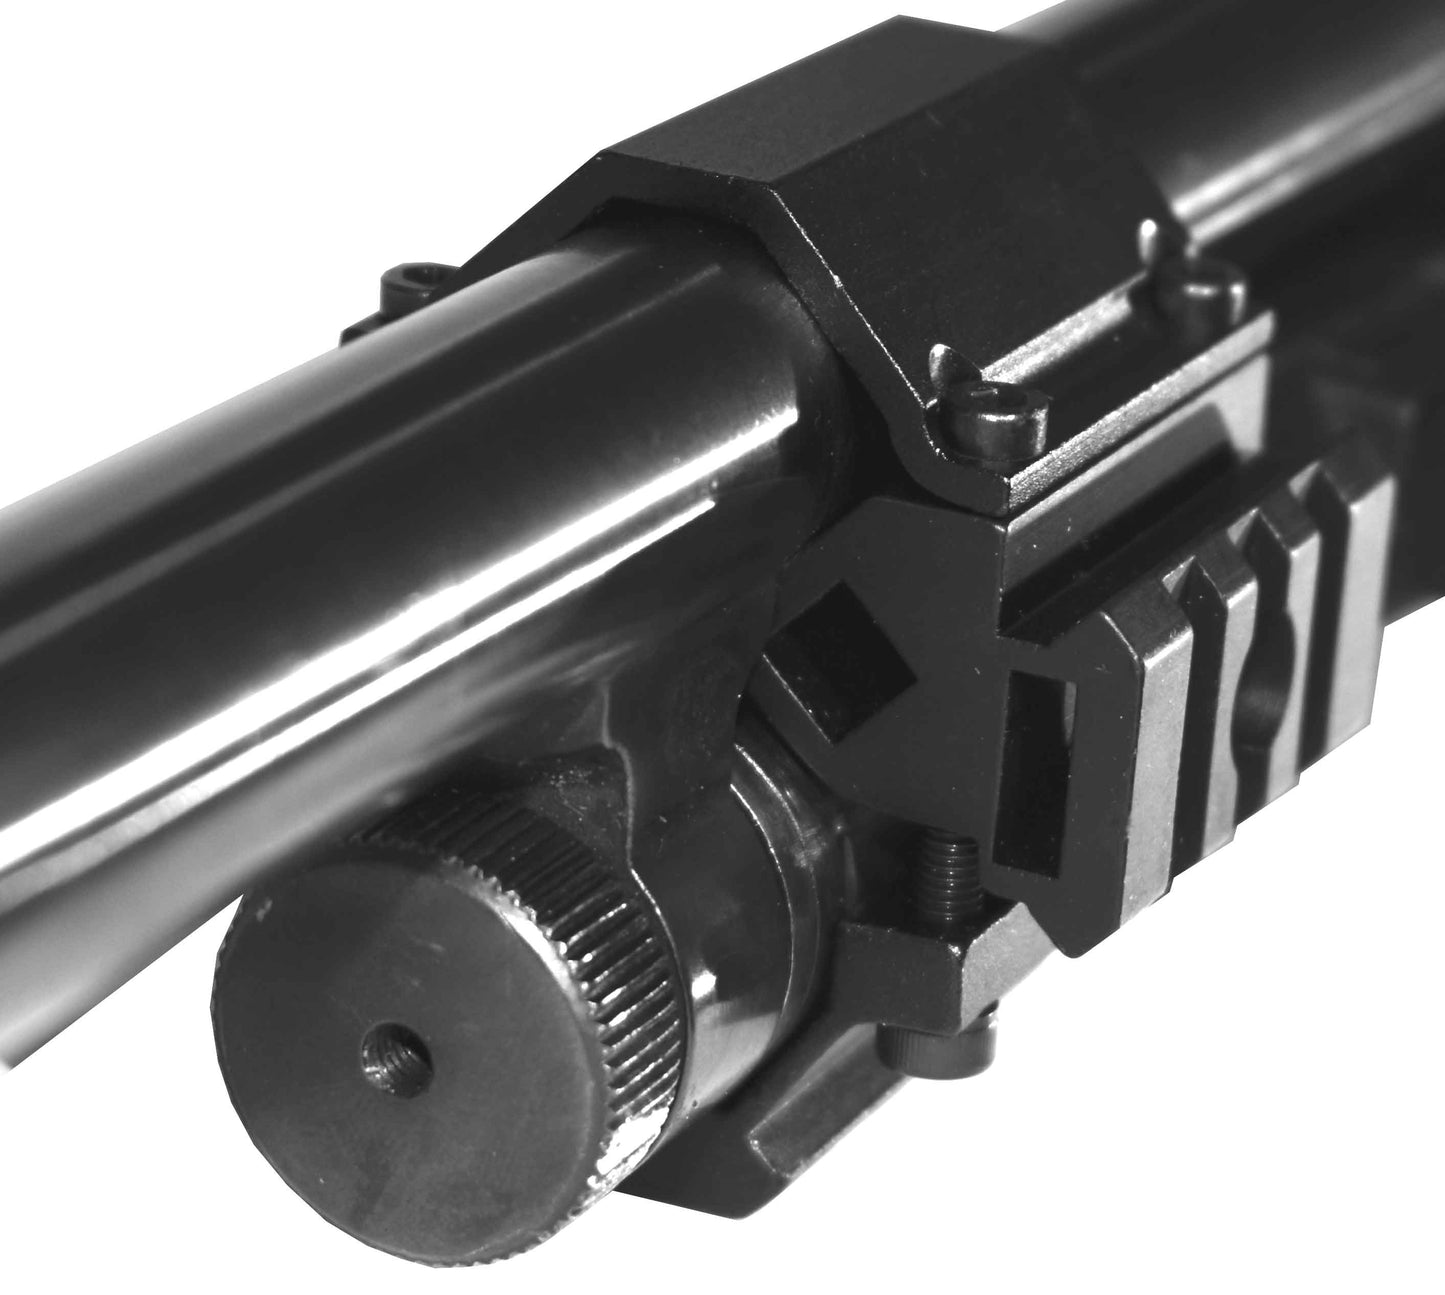 Tactical Magazine Tube Mount Compatible With Remington 870 12 Gauge Pumps.